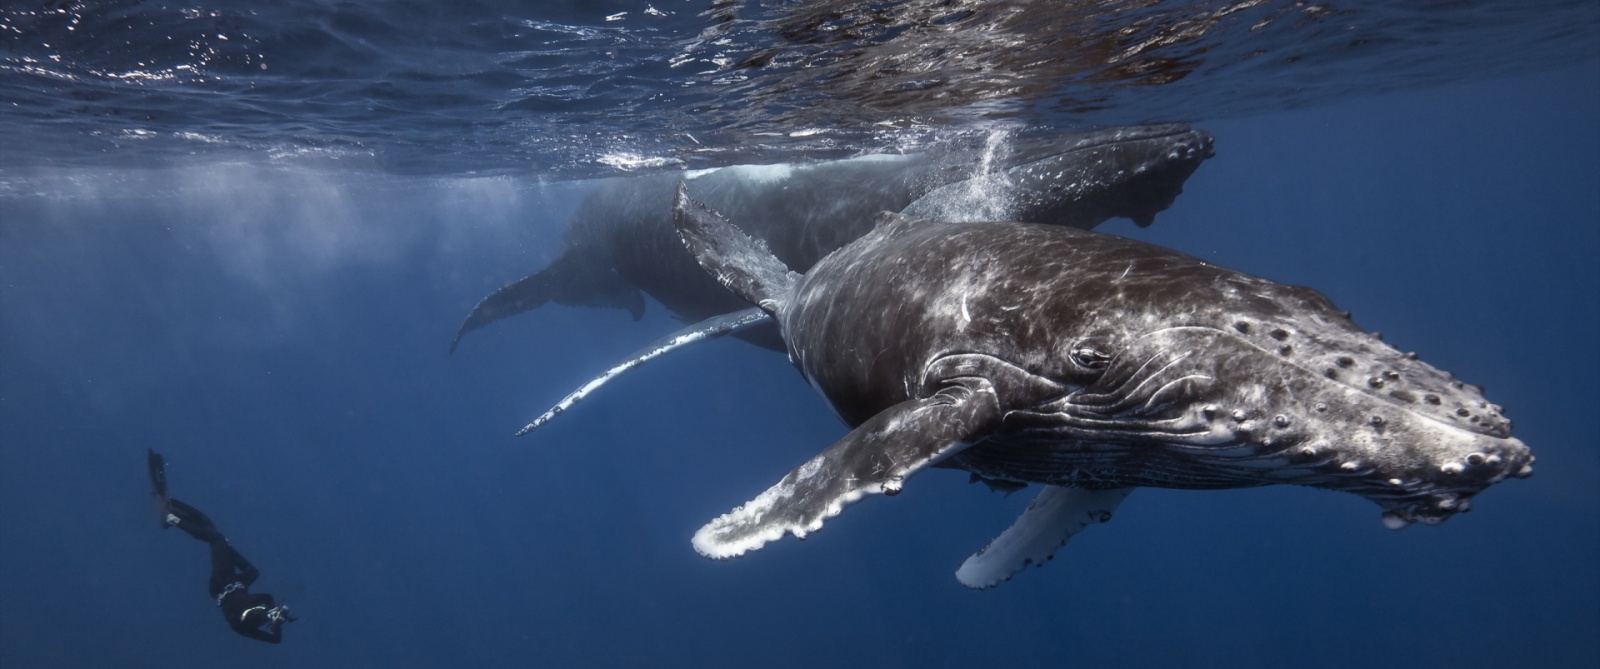 Маленький секрет большого сердца: первая в истории кардиограмма синего кита - 1